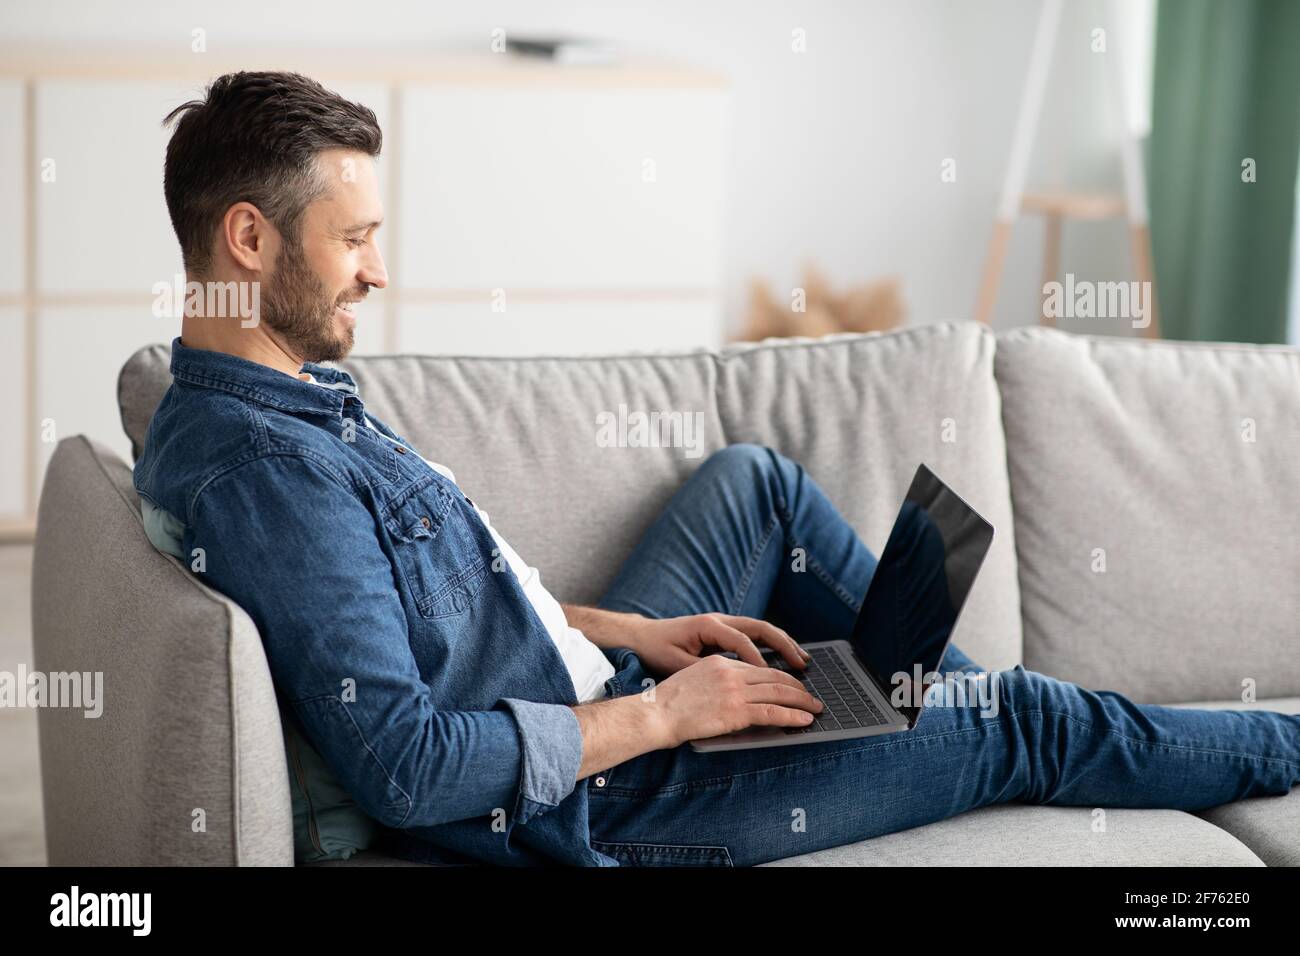 Vista laterale di un uomo con la bearded reclinato sul divano, utilizzando un computer portatile Foto Stock